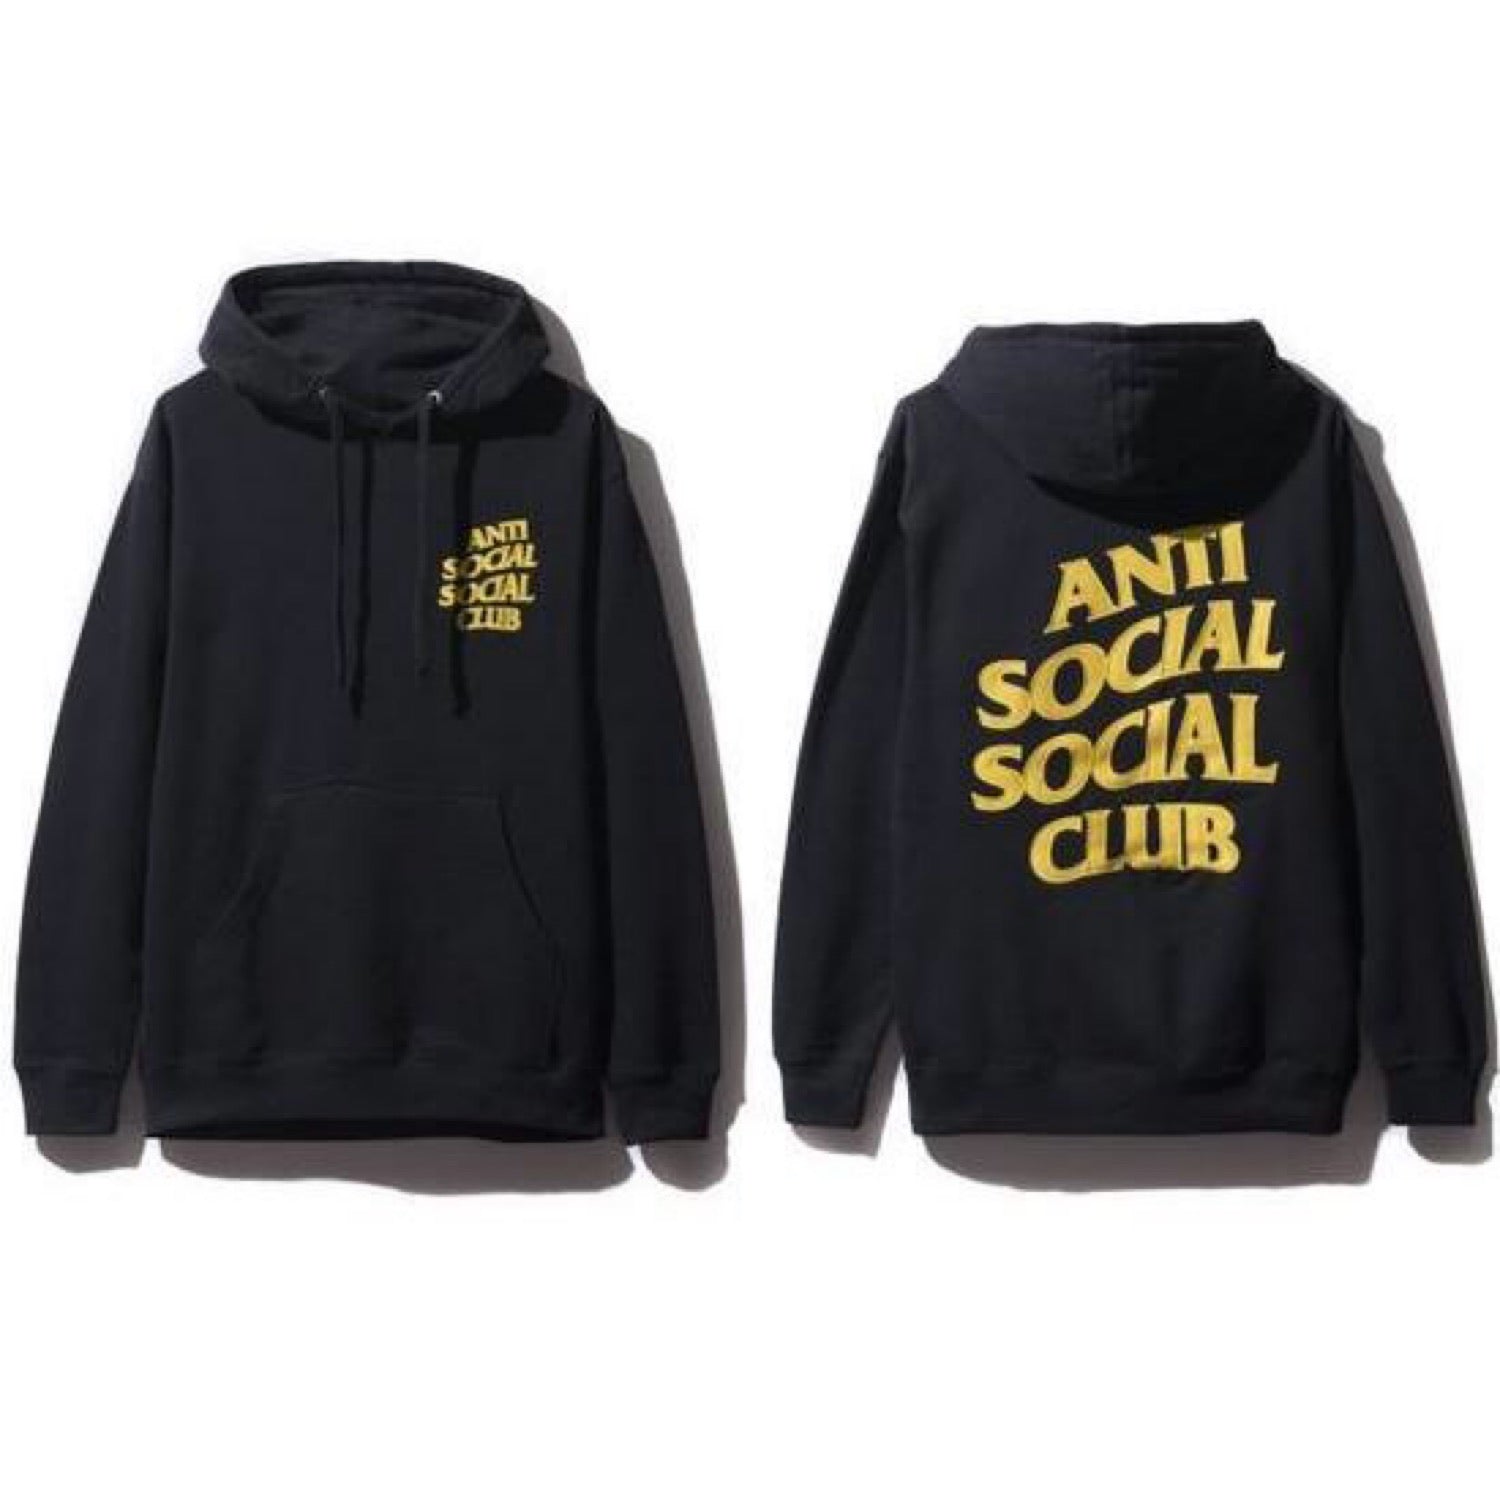 Anti Social Social Club Black and Yellow Hoodie